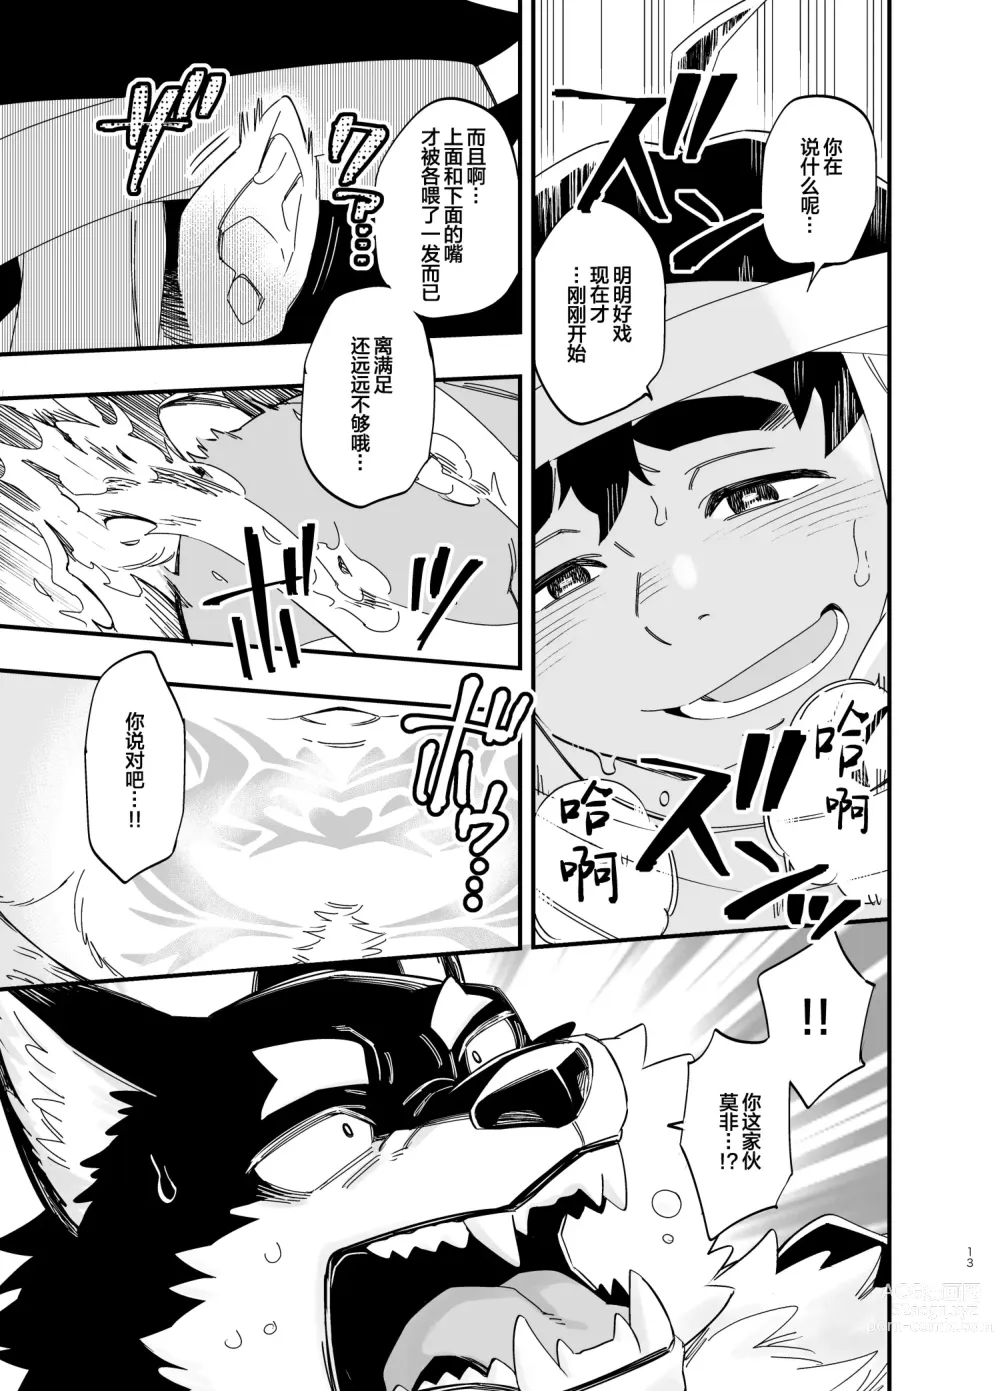 Page 14 of manga オオカミなんかこわくない！